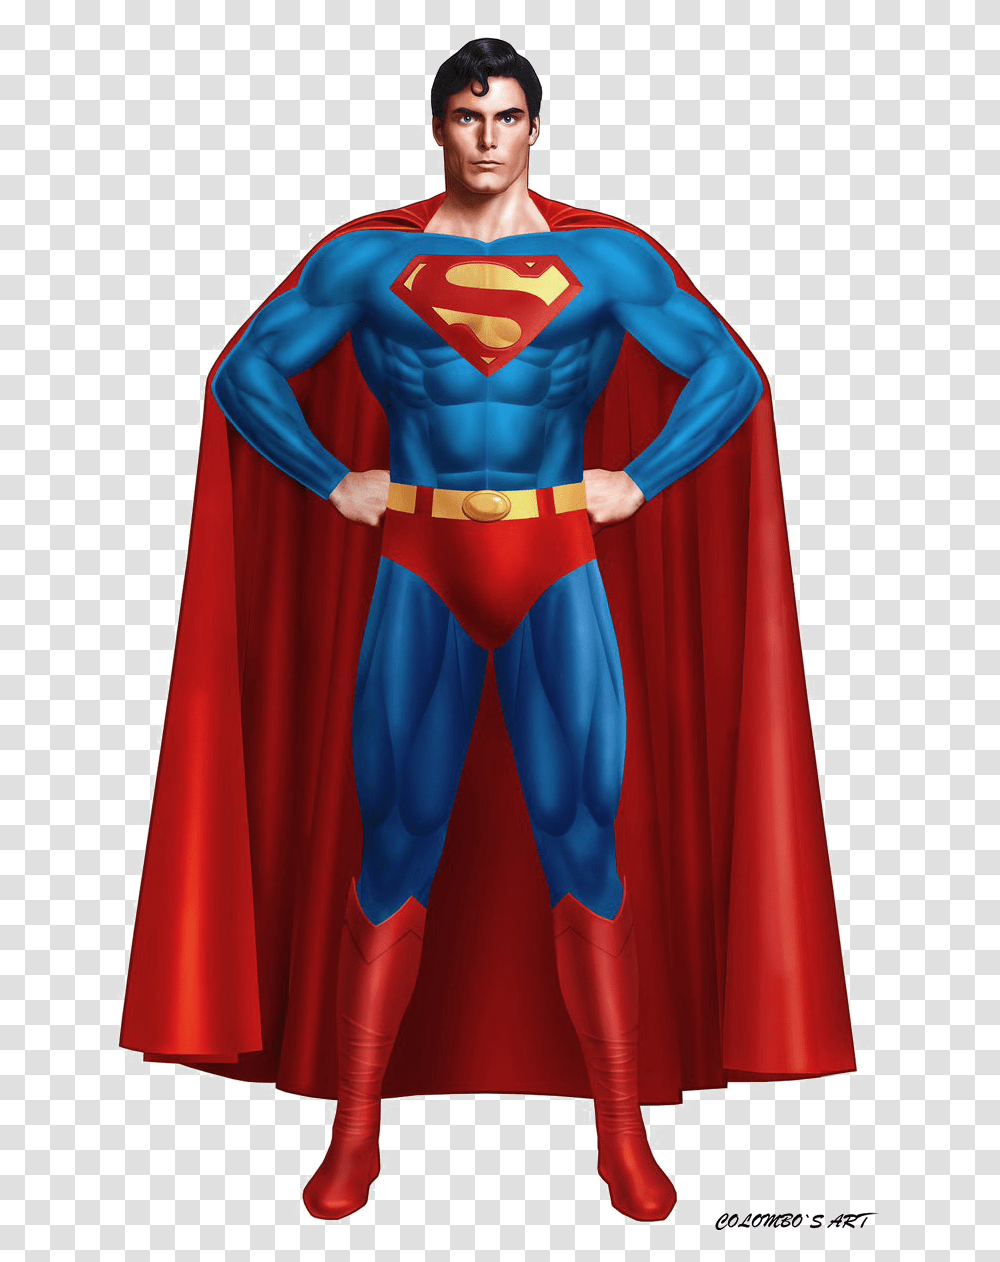 Superman High Quality Image Kingdom Come Superman Suit, Apparel, Fashion, Cloak Transparent Png